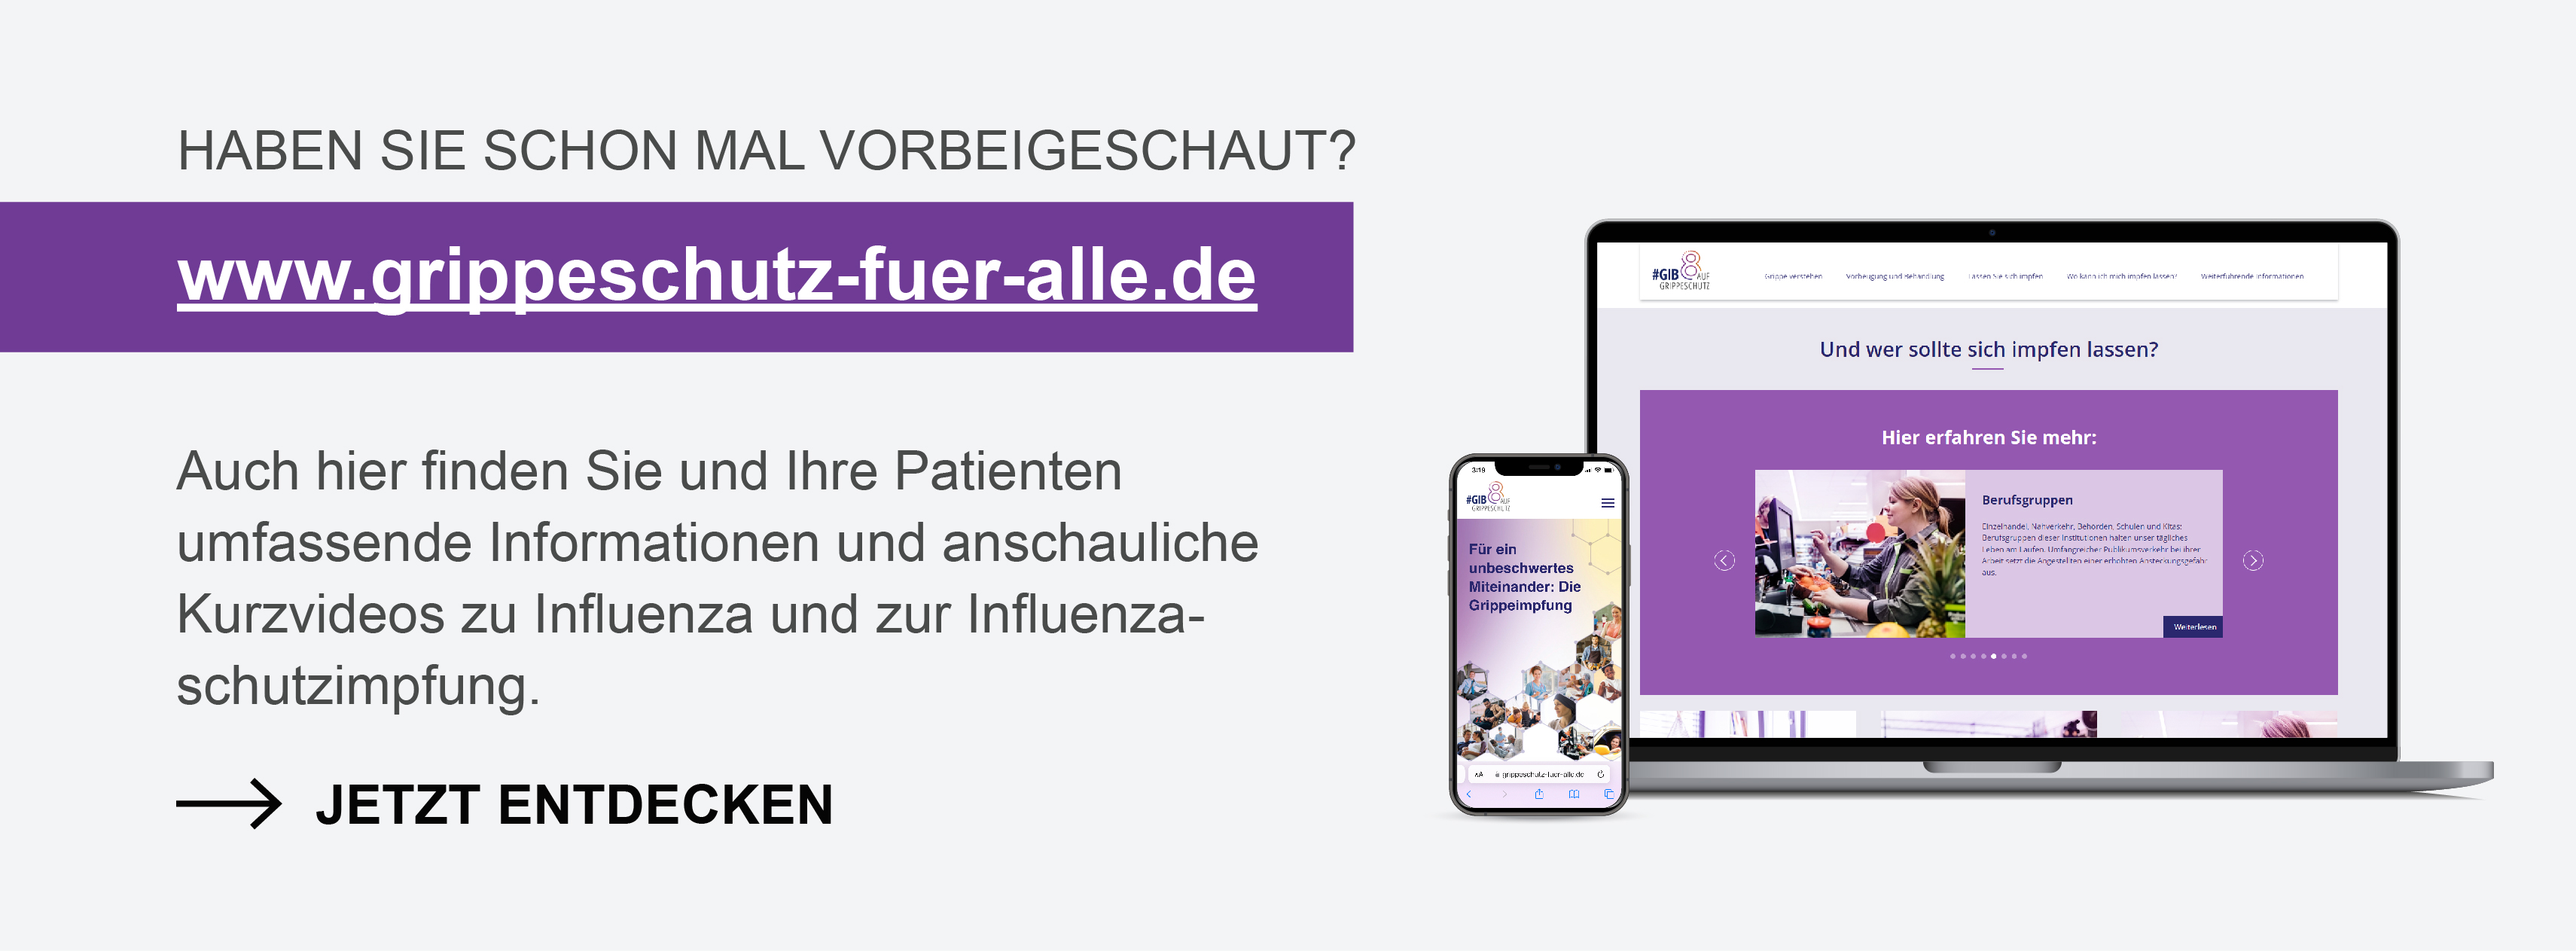 Darstellung der Patientenwebsite www.grippeschutz-fuer-alle.de auf Laptop und iPhone – mit Informationen zu Influenza und zur Influenzaschutzimpfung